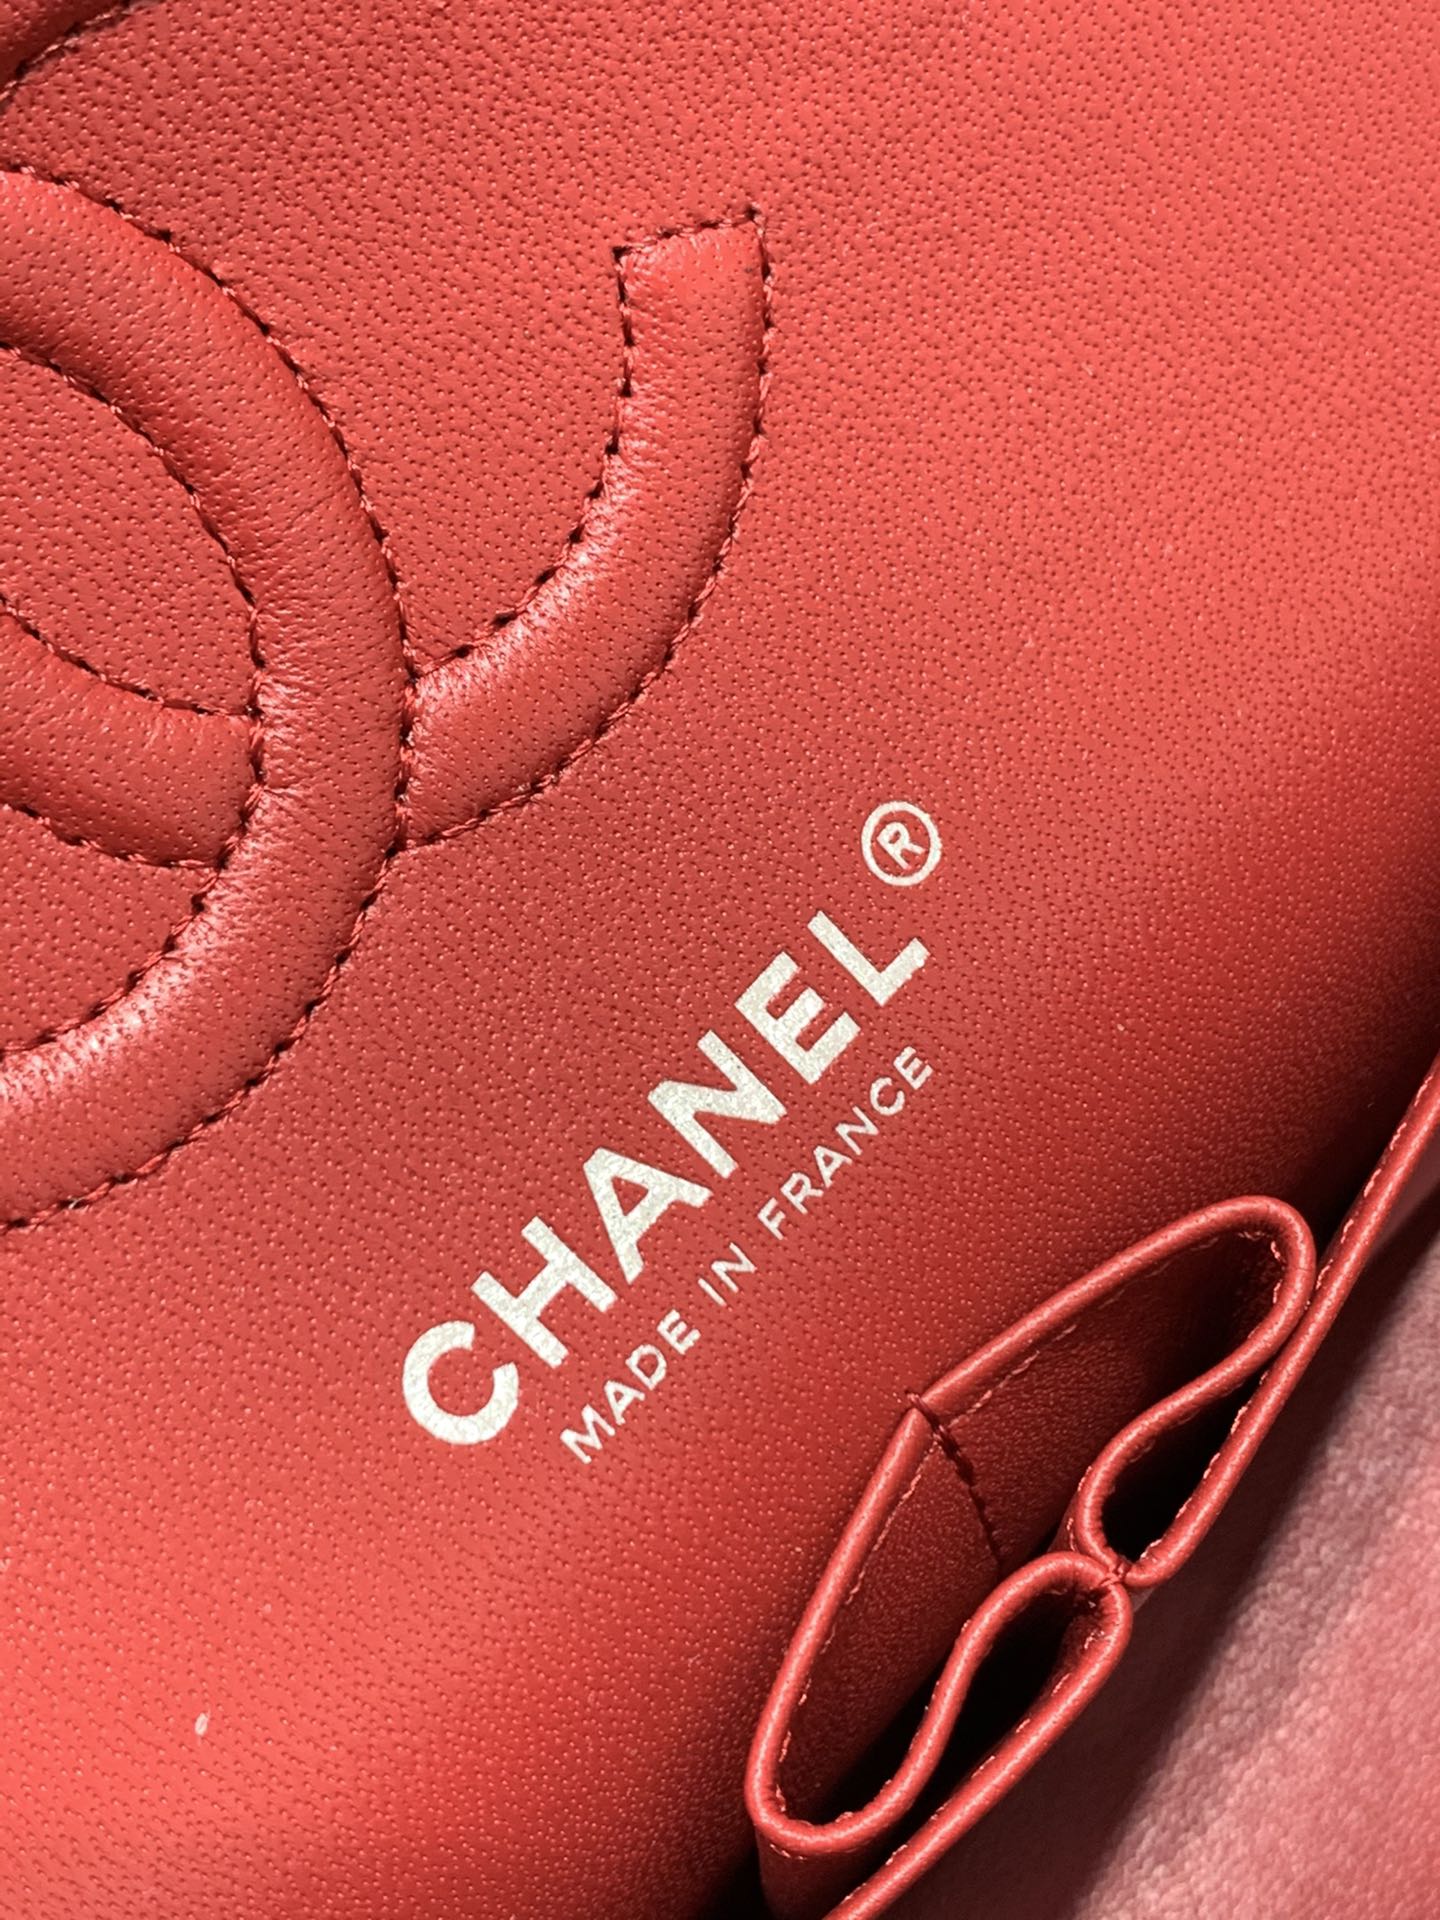 升级版带芯片【真品级】 Chanel CF  原厂bodin joyeux 羔羊皮 2021新颜色 新酒红 银扣